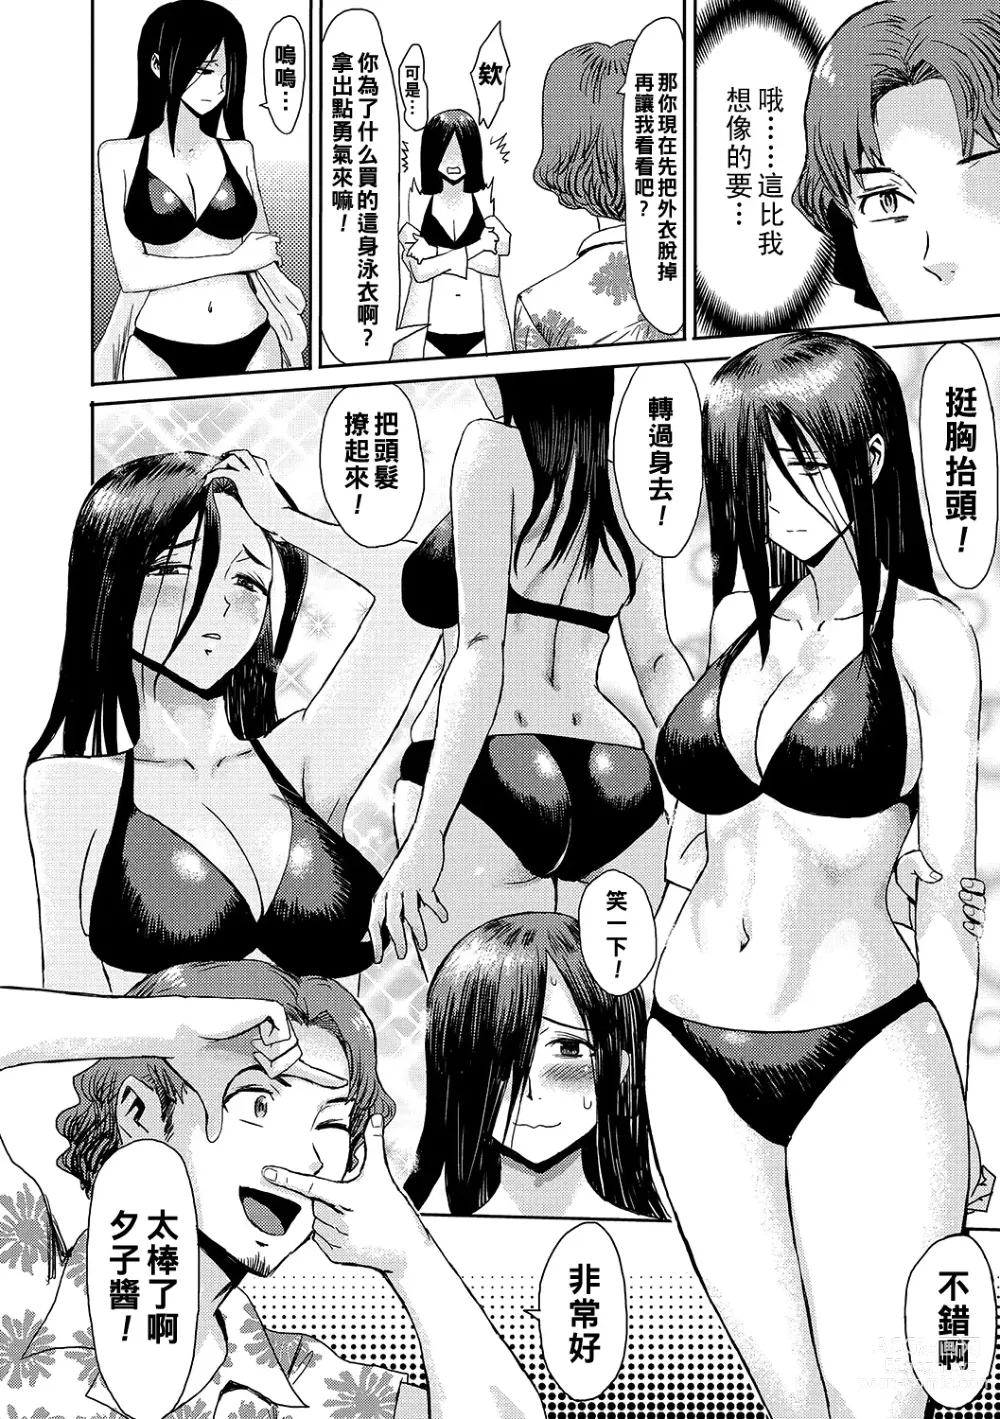 Page 4 of manga Natsu no Shiosai